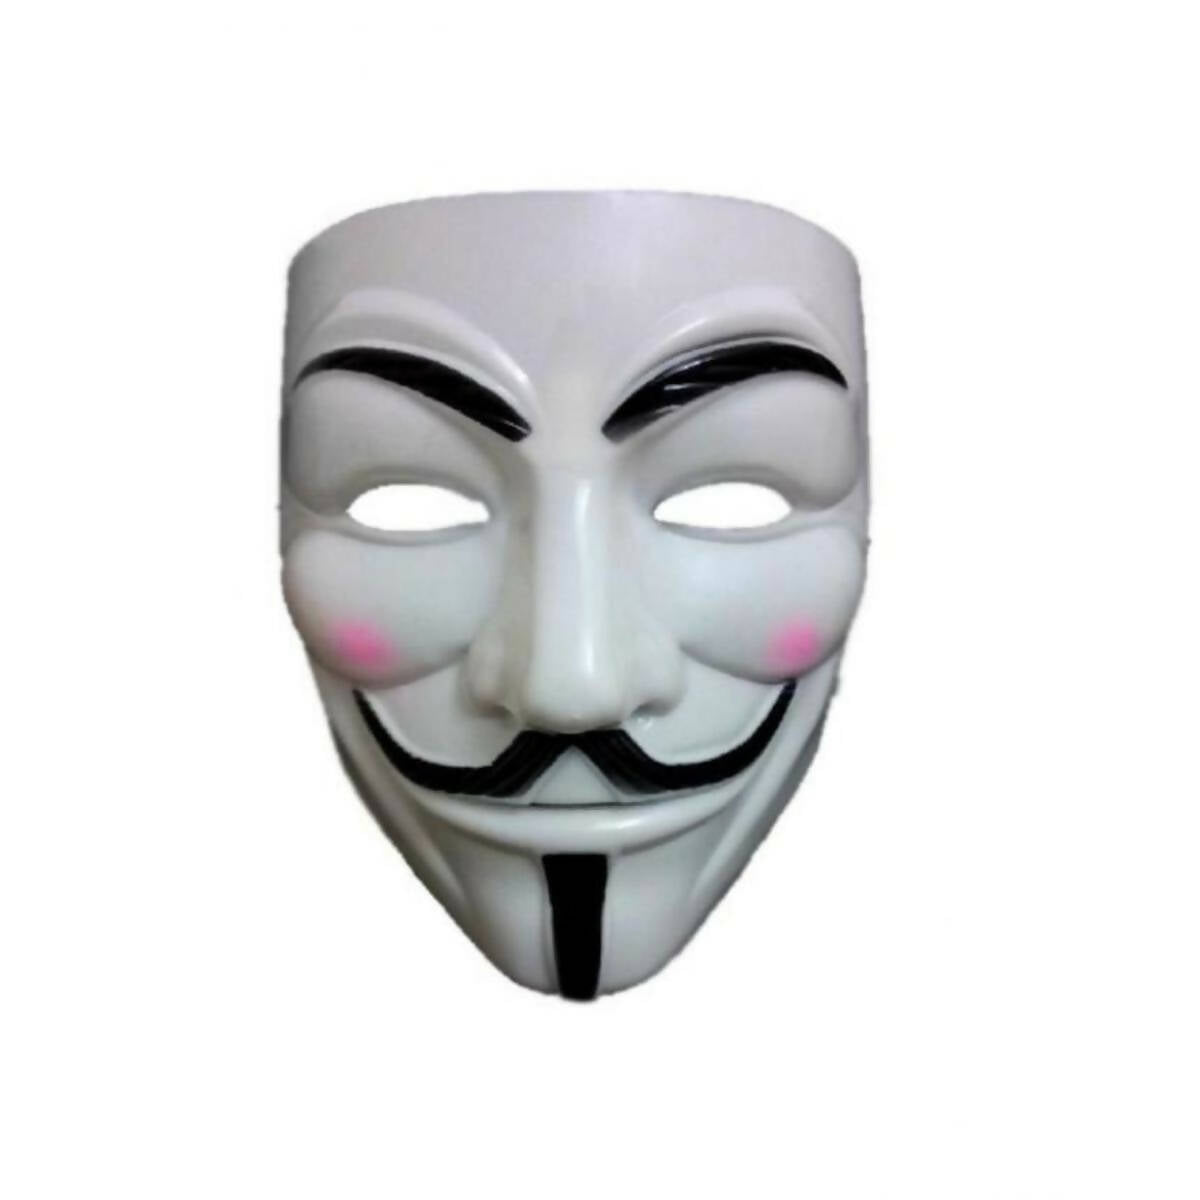 V for Vendetta Mask - Toys For Boys